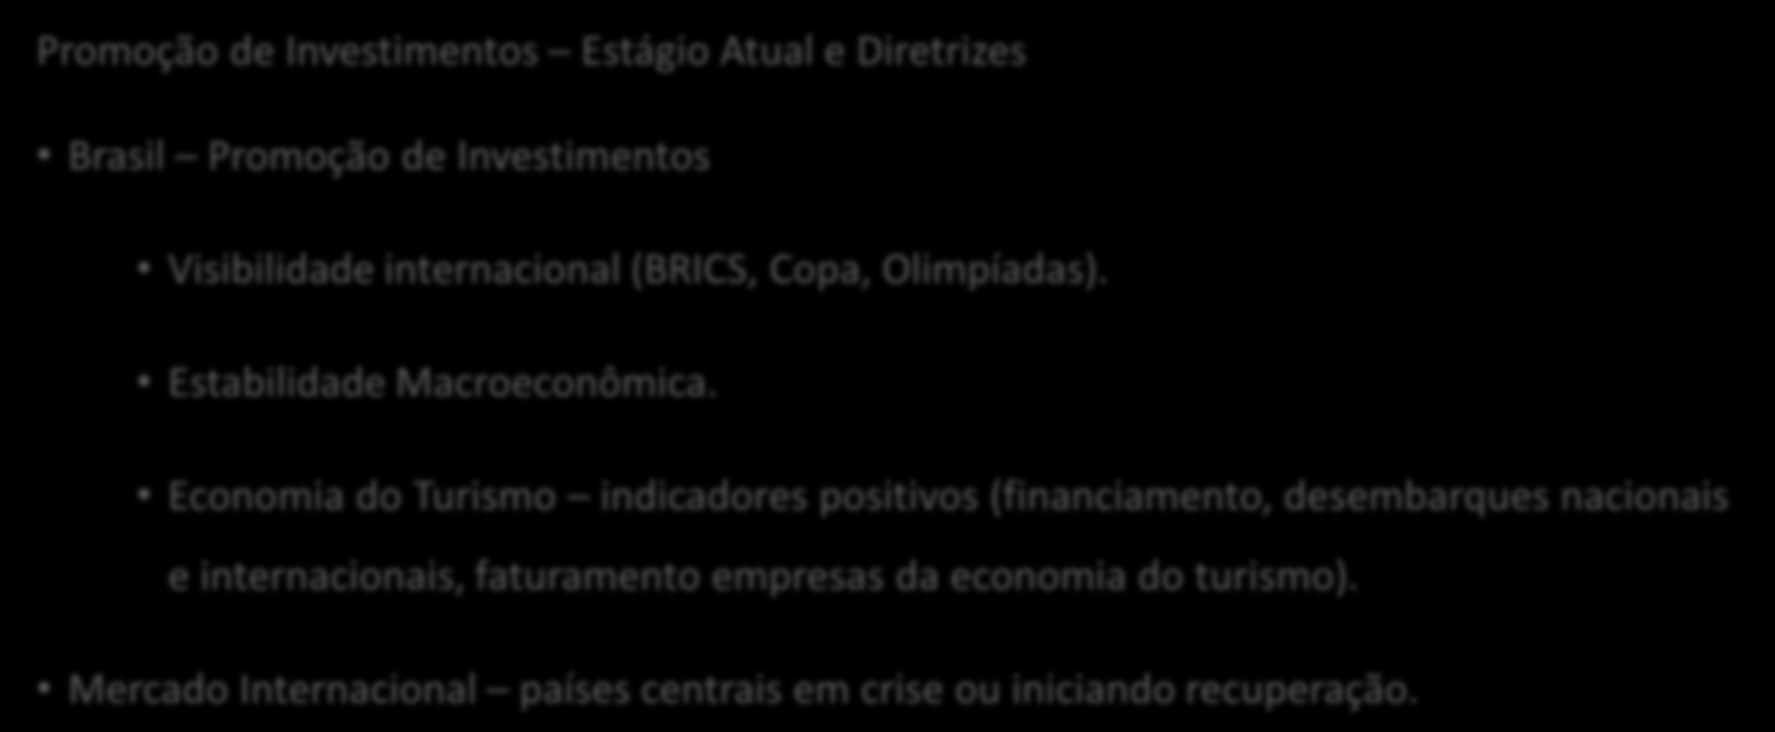 Departamento de Financiamento e Promoção de Investimentos Promoção de Investimentos Estágio Atual e Diretrizes Brasil Promoção de Investimentos Visibilidade internacional (BRICS, Copa, Olimpíadas).